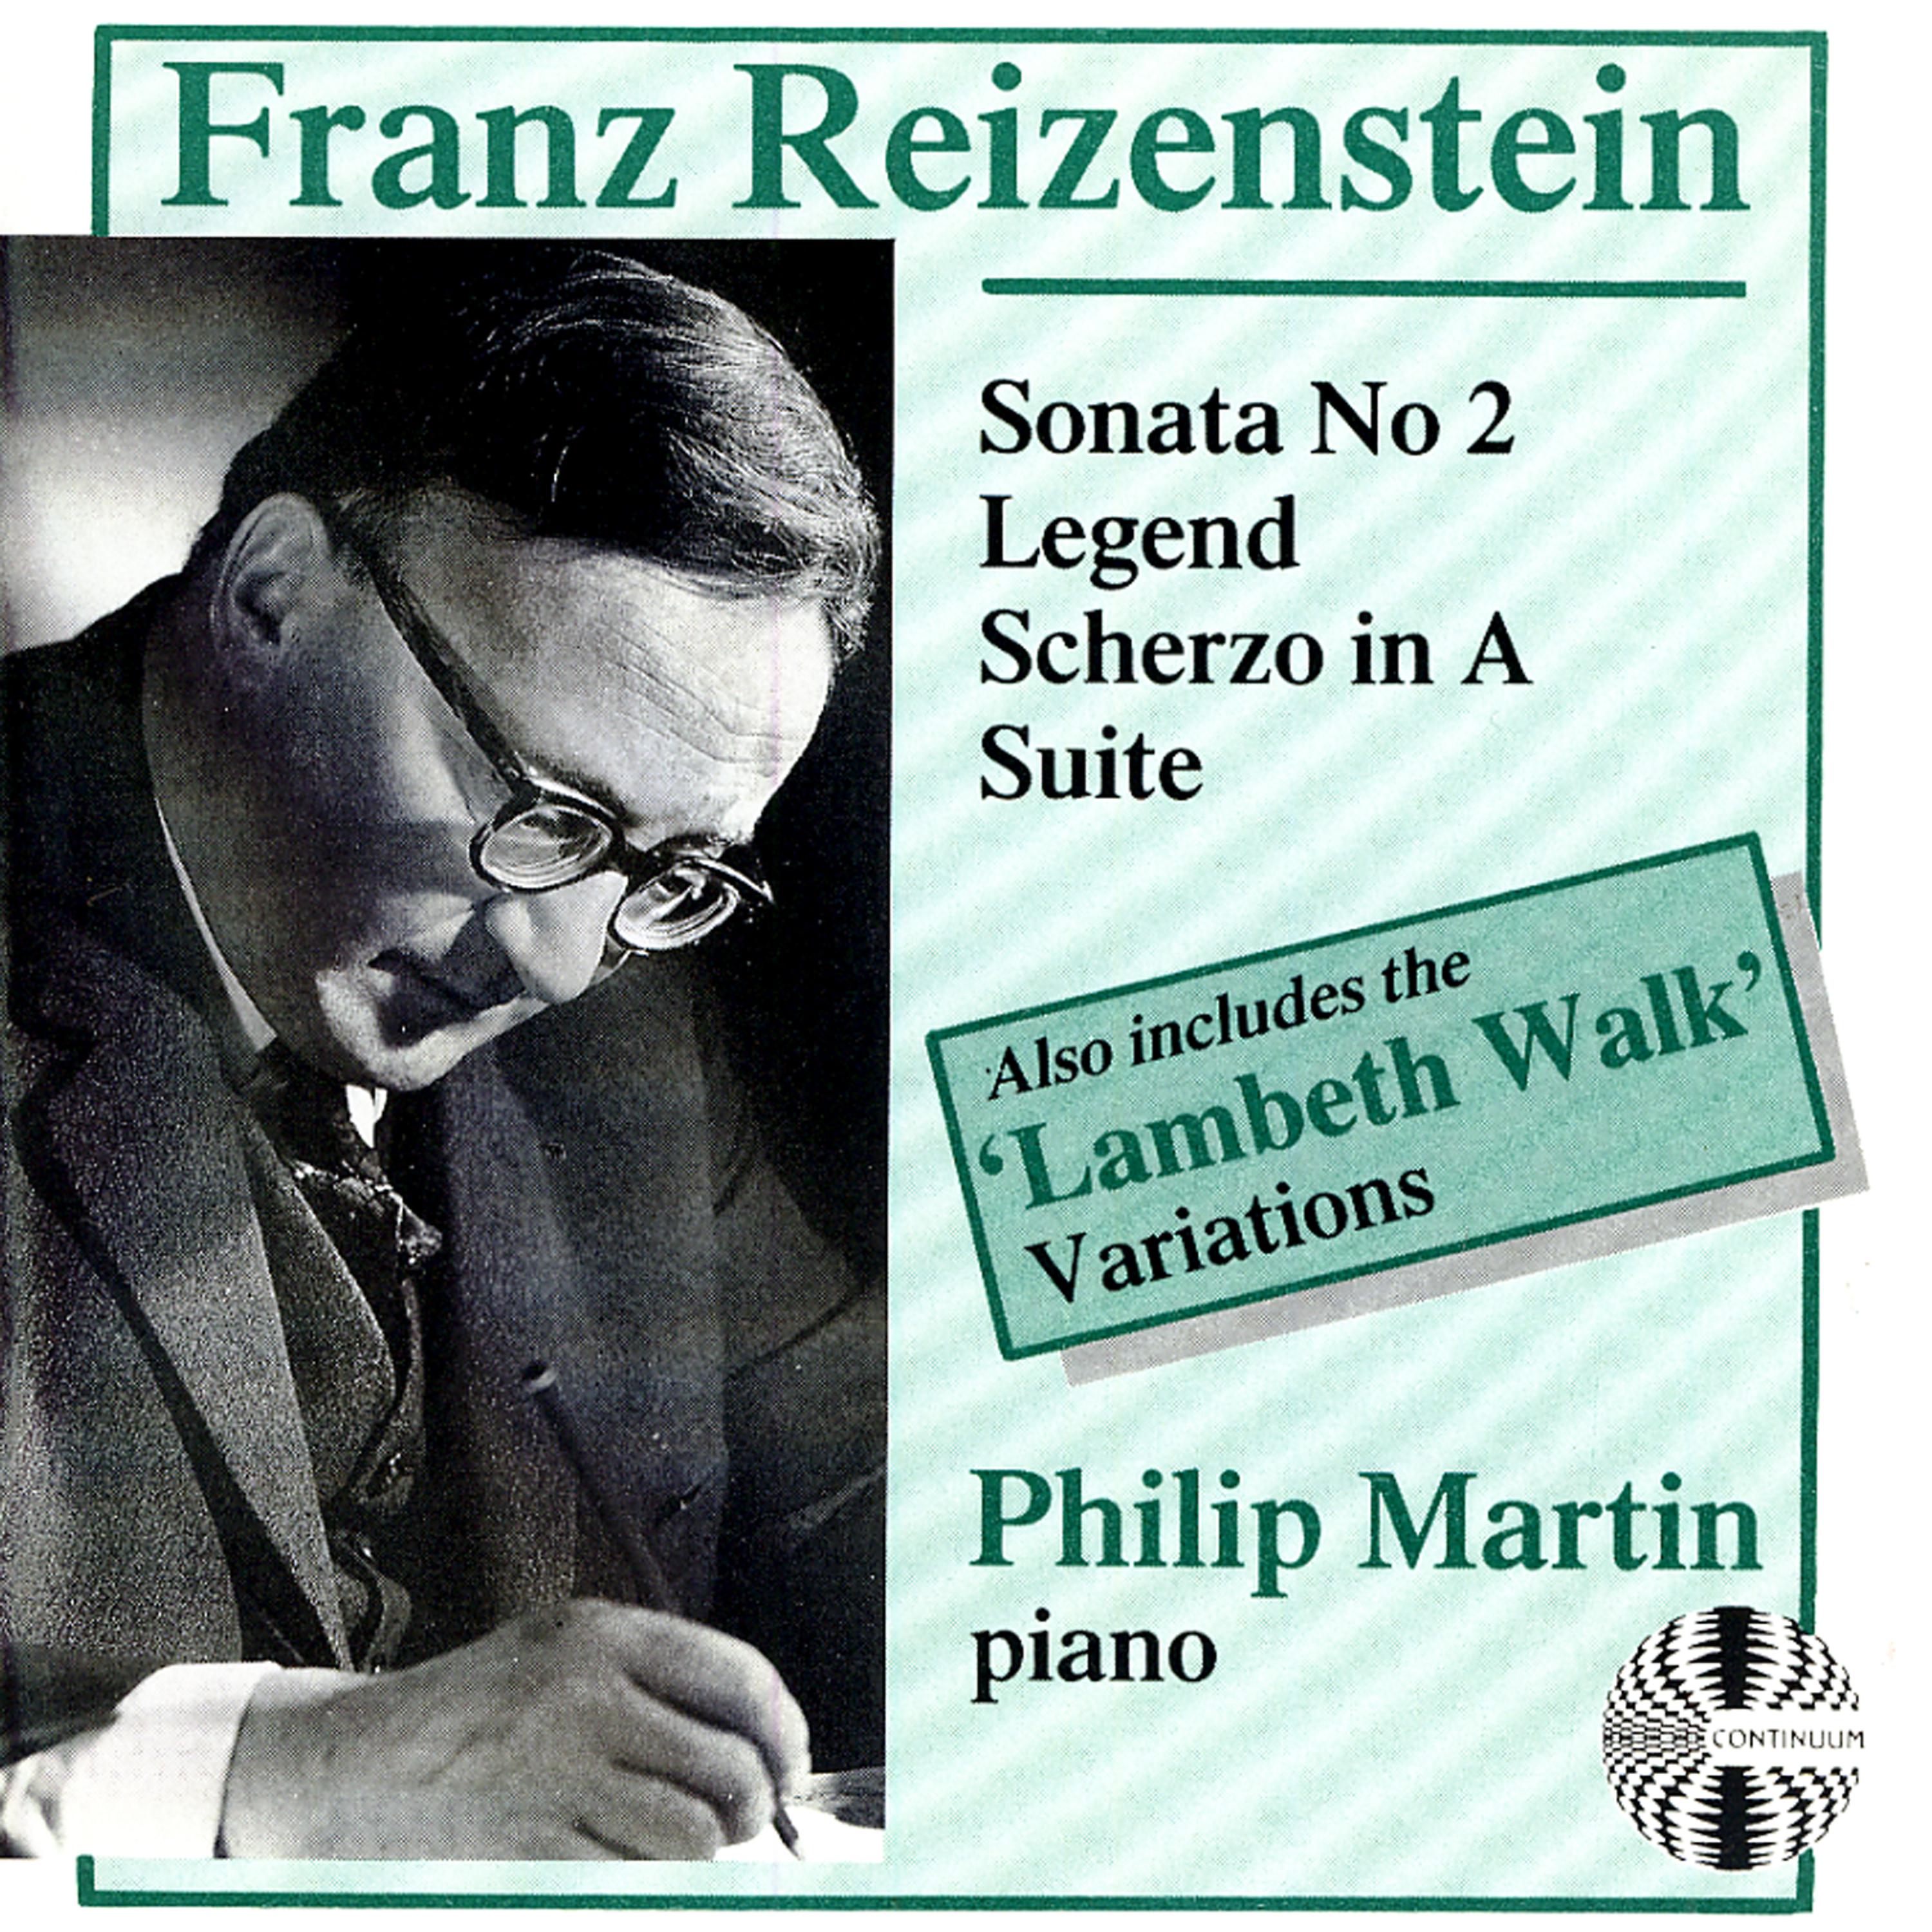 Постер альбома Franz Reizenstein: Sonata No. 2, Legend, Scherzo in A, Suite, "Lambeth Walk" Variations